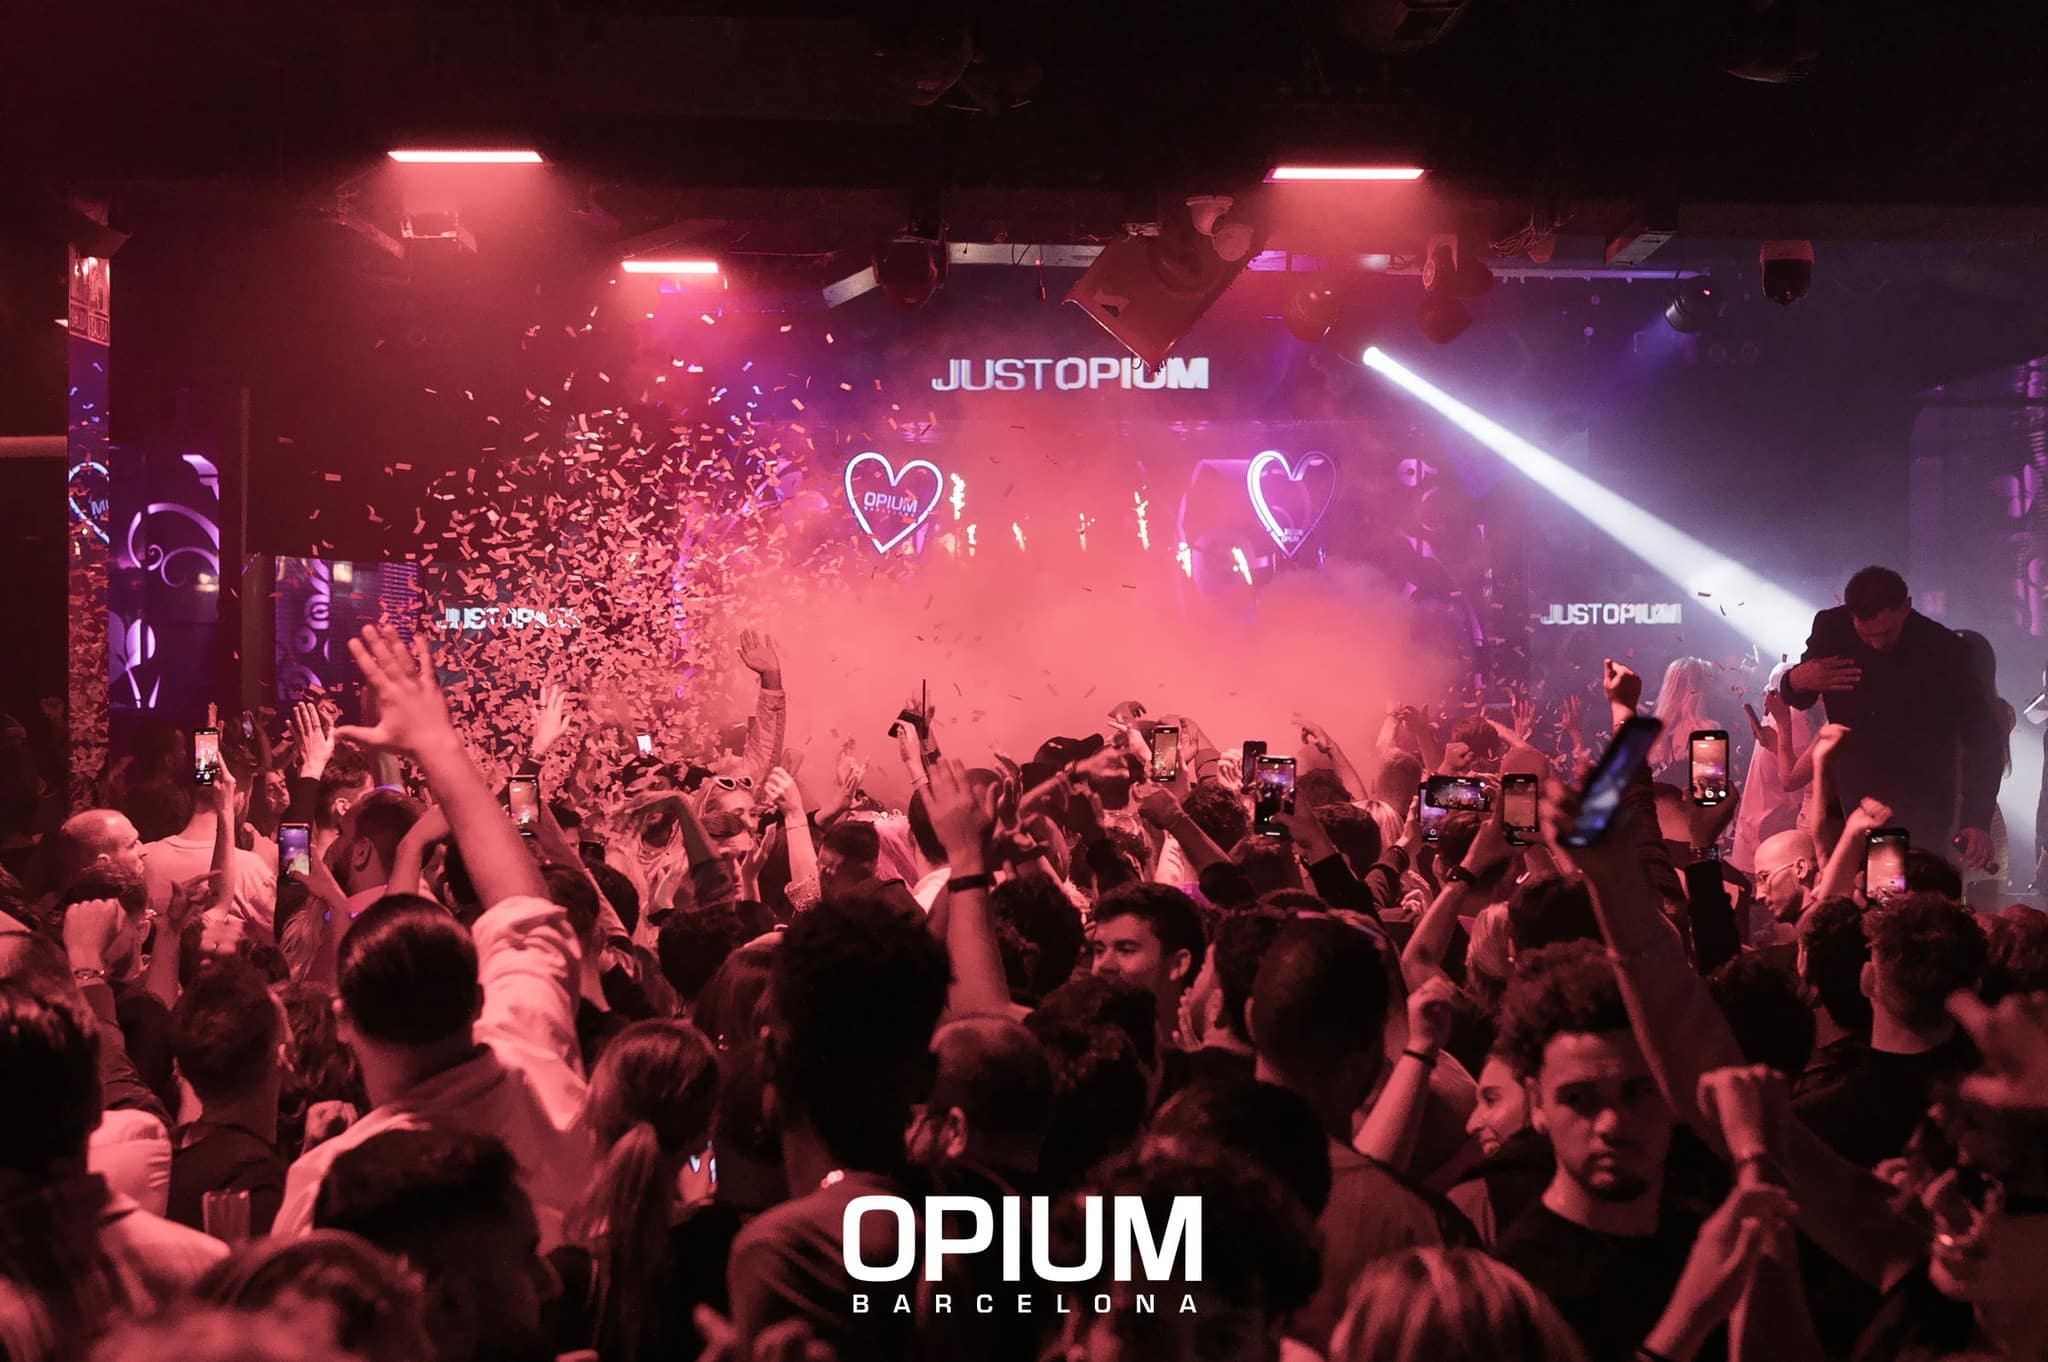 Opium, Barcelona free parties barcelona